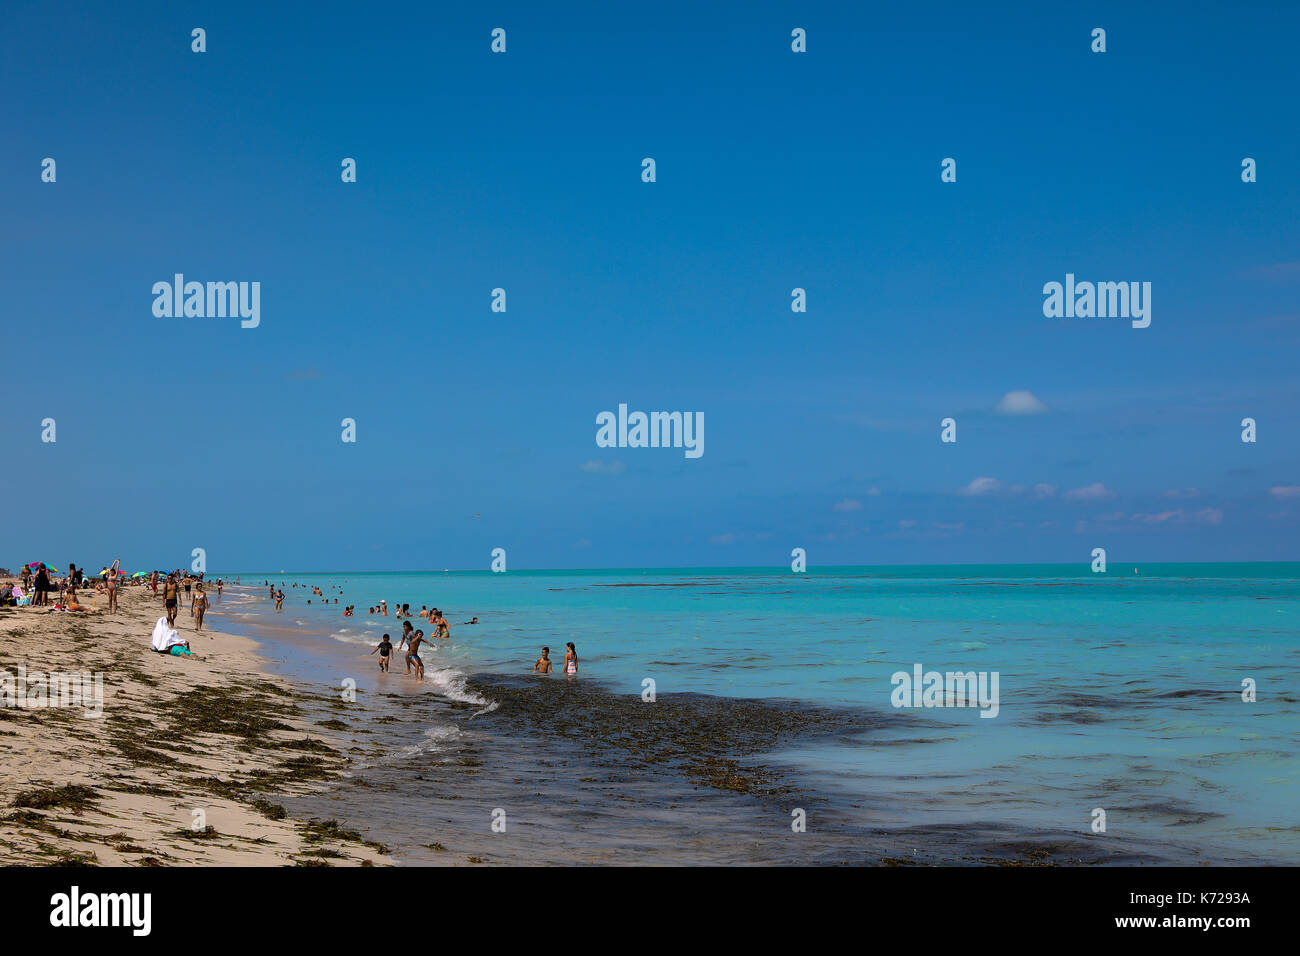 Vue sur une grande quantité de saleté sur la plage de Miami Beach à Miami aux États-Unis ce jeudi 14. (PHOTO: WILLIAM VOLCOV/BRÉSIL PHOTO PRESSE) Banque D'Images